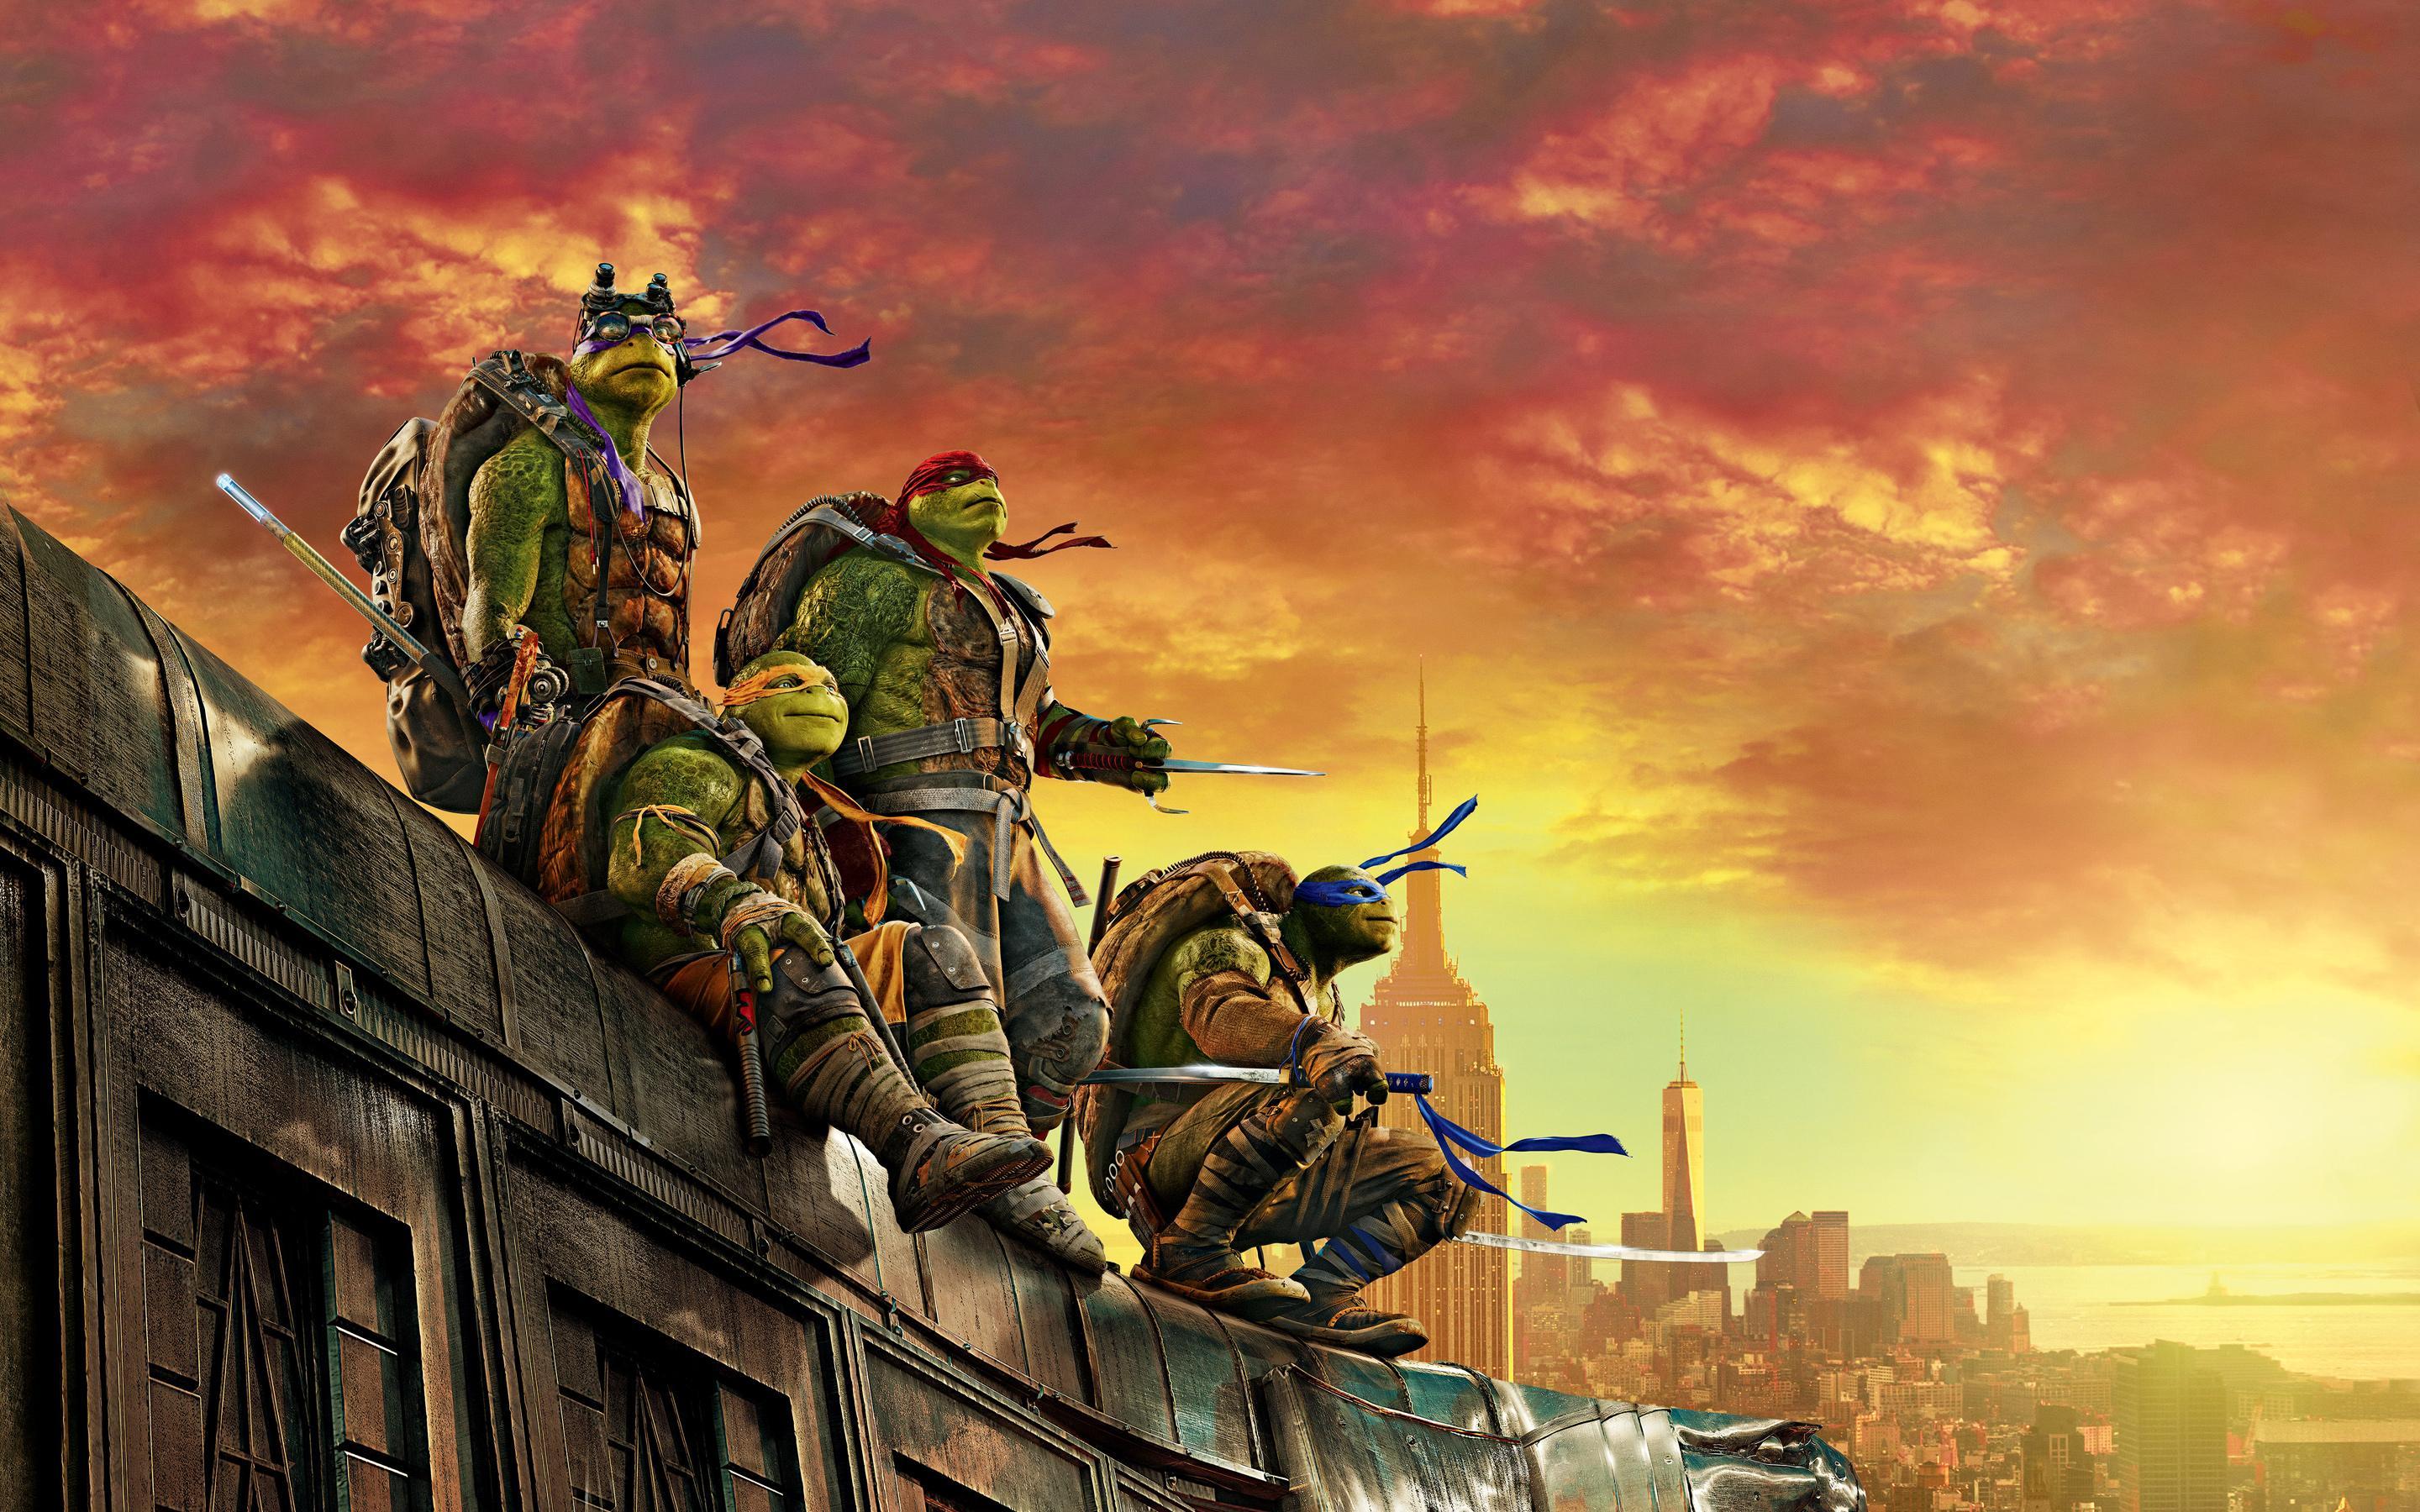 Comics Teenage Mutant Ninja Turtles 4k Ultra HD Wallpaper by Laz